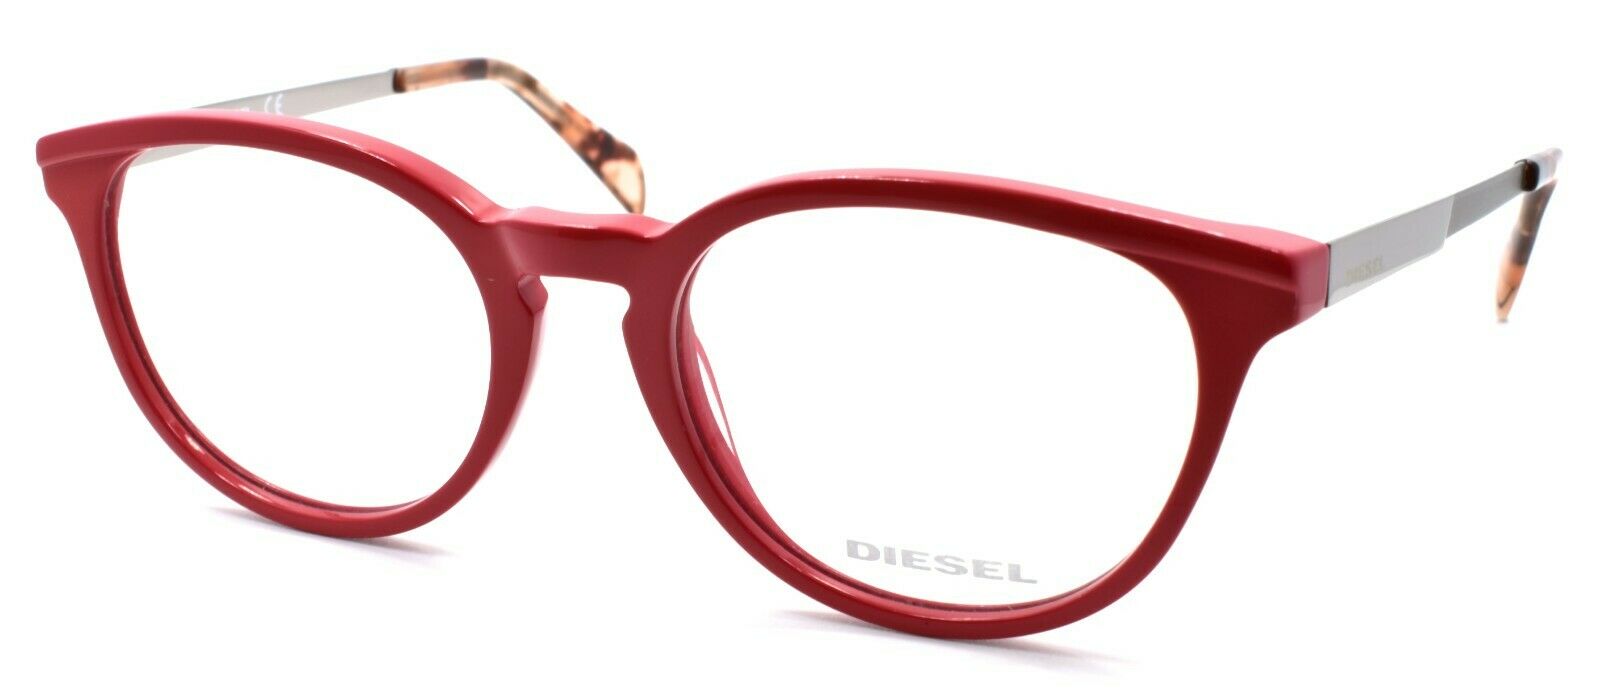 1-Diesel DL5150 068 Eyeglasses Frames 50-18-140 Red Cherry Palladium-664689707492-IKSpecs